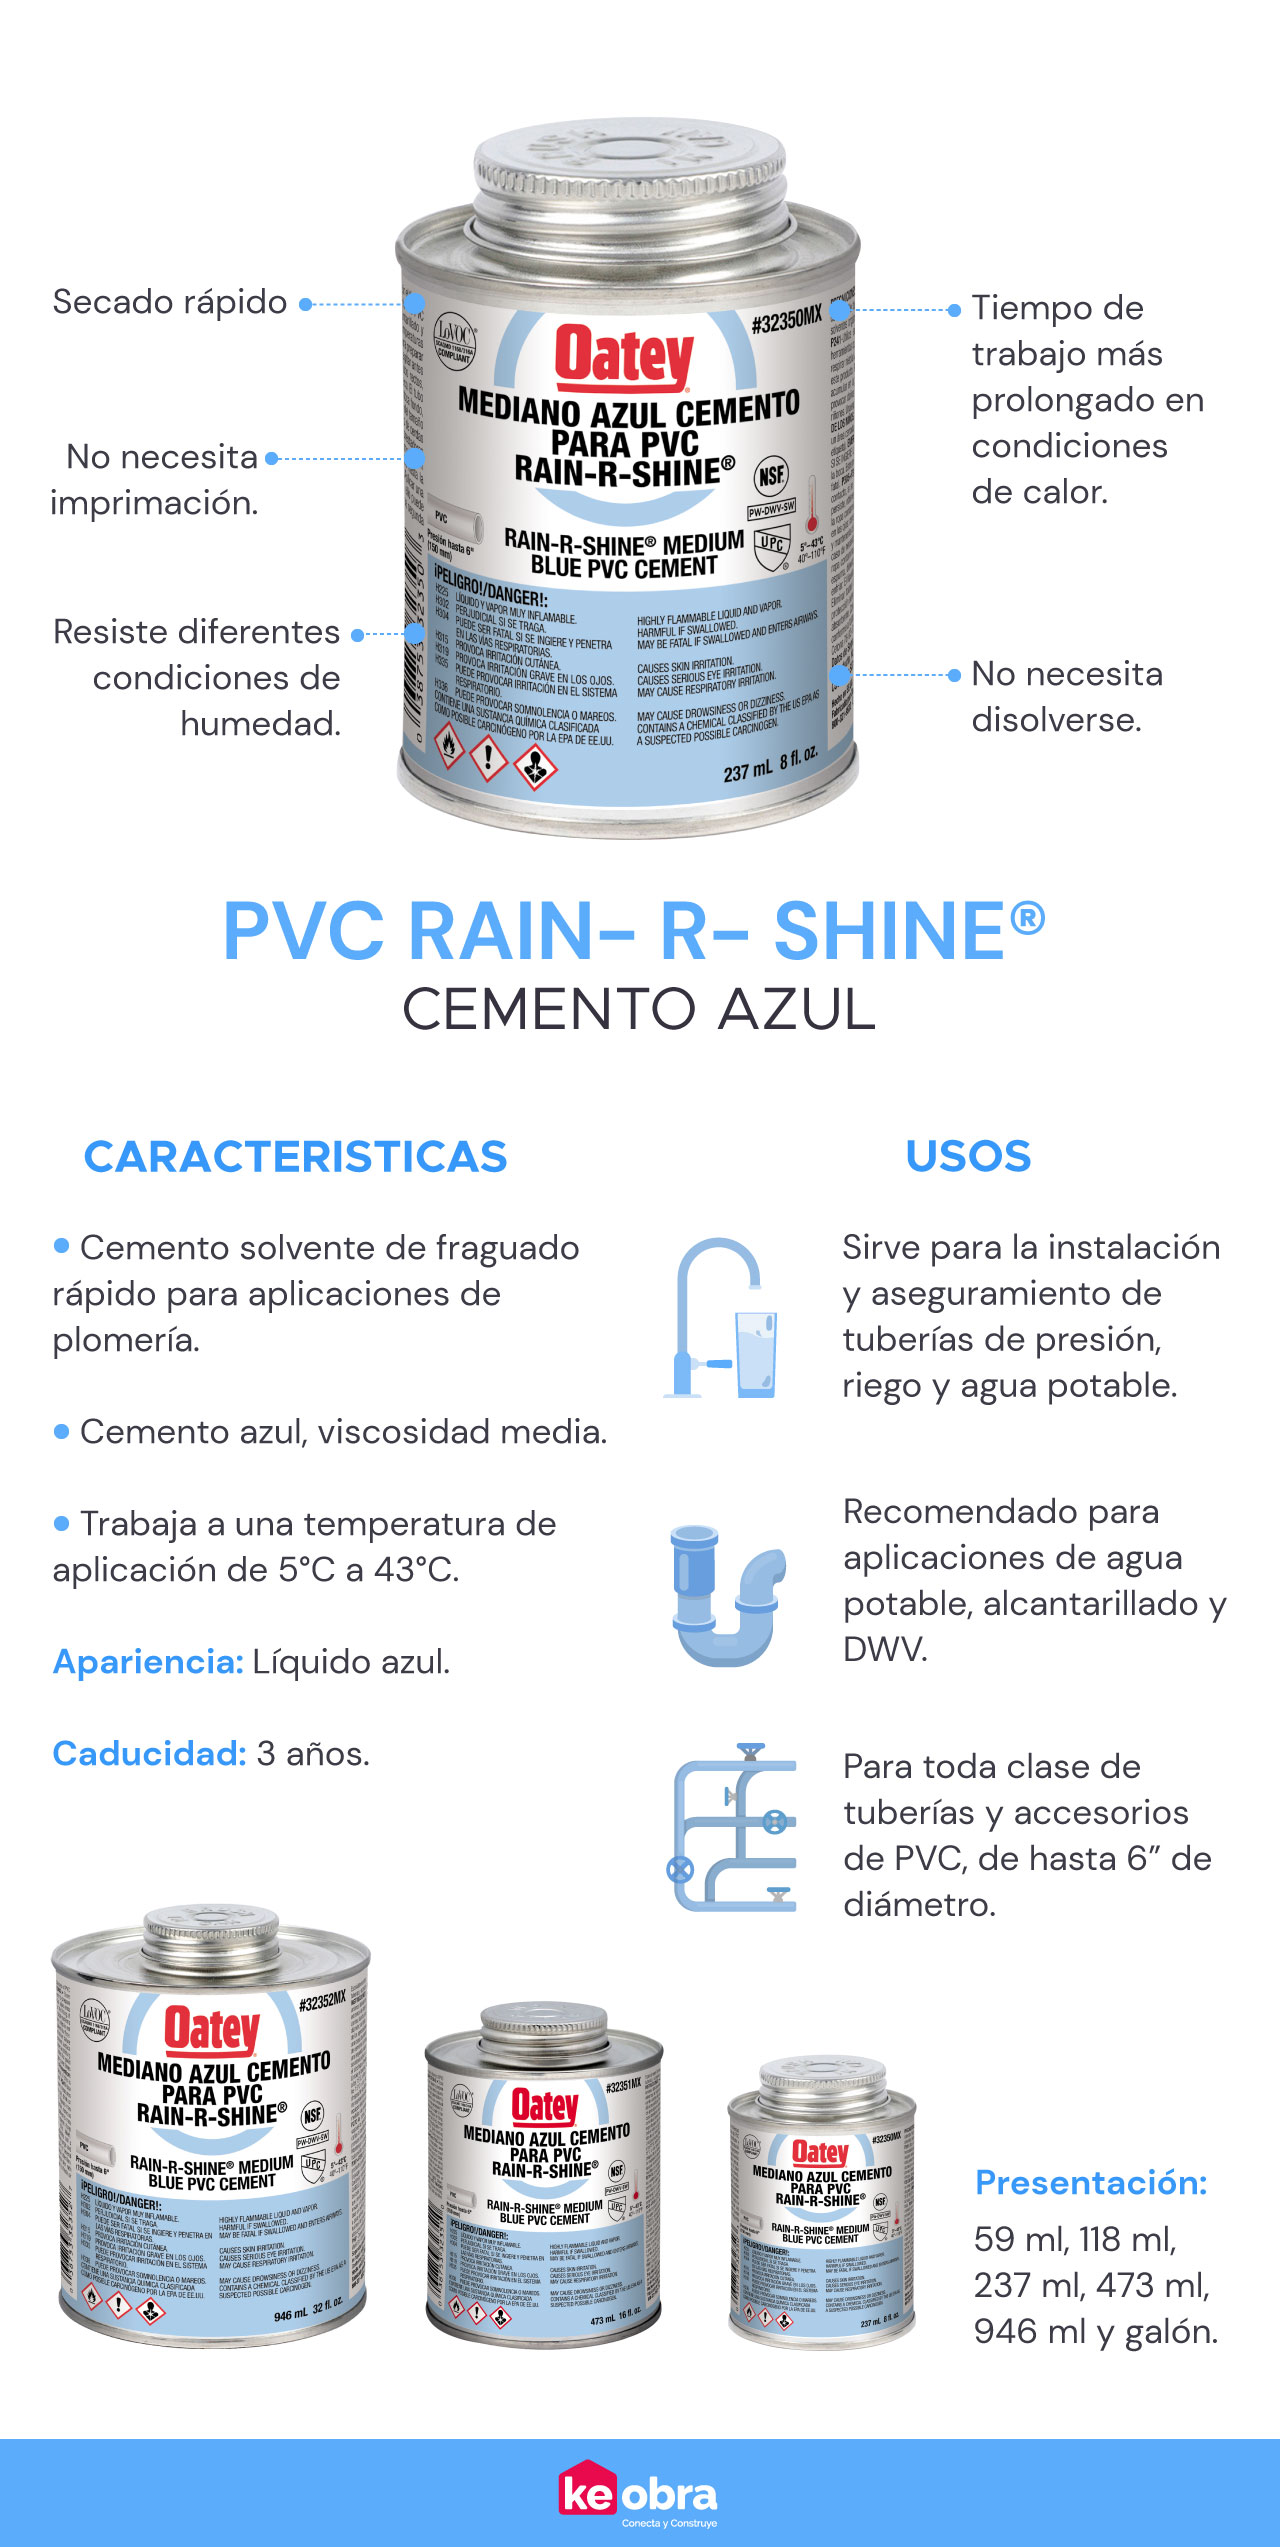 Conoce las características y ventajas del cemento azul para tuberías en instalaciones hidráulicas Rain-R-Shine de Oatey